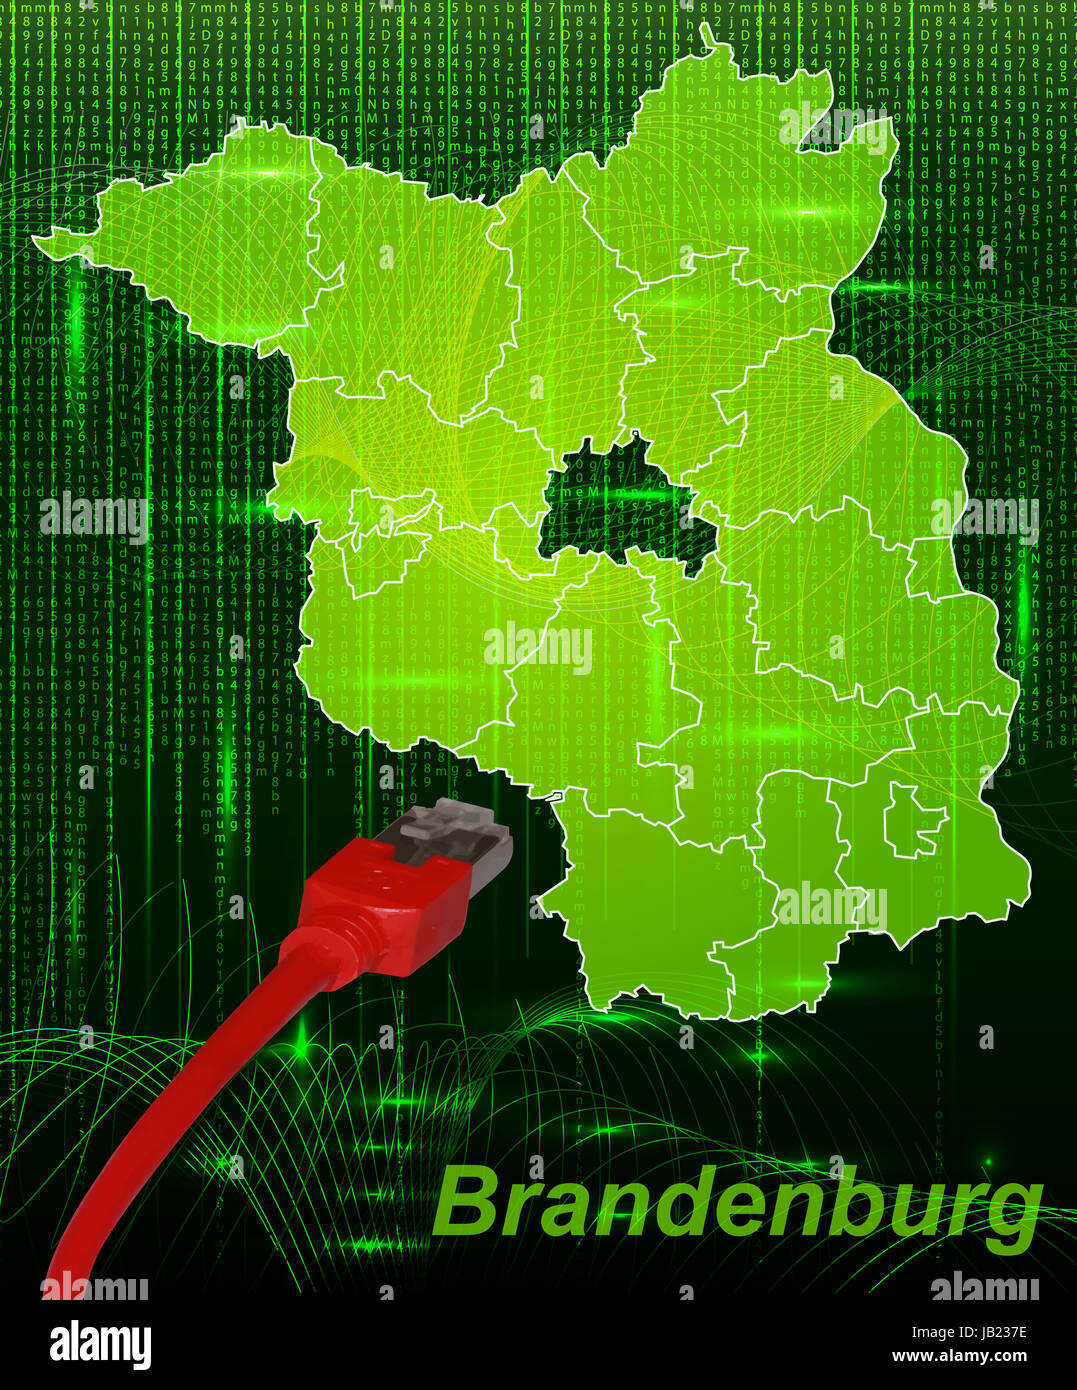 Brandeburgo in Deutschland als Grenzkarte mit Grenzen in dem Neuen Netzwerkdesign. Durch die ansprechende Gestaltung fügt sich die Karte perfekt in Ihr Vorhaben ein. Foto Stock